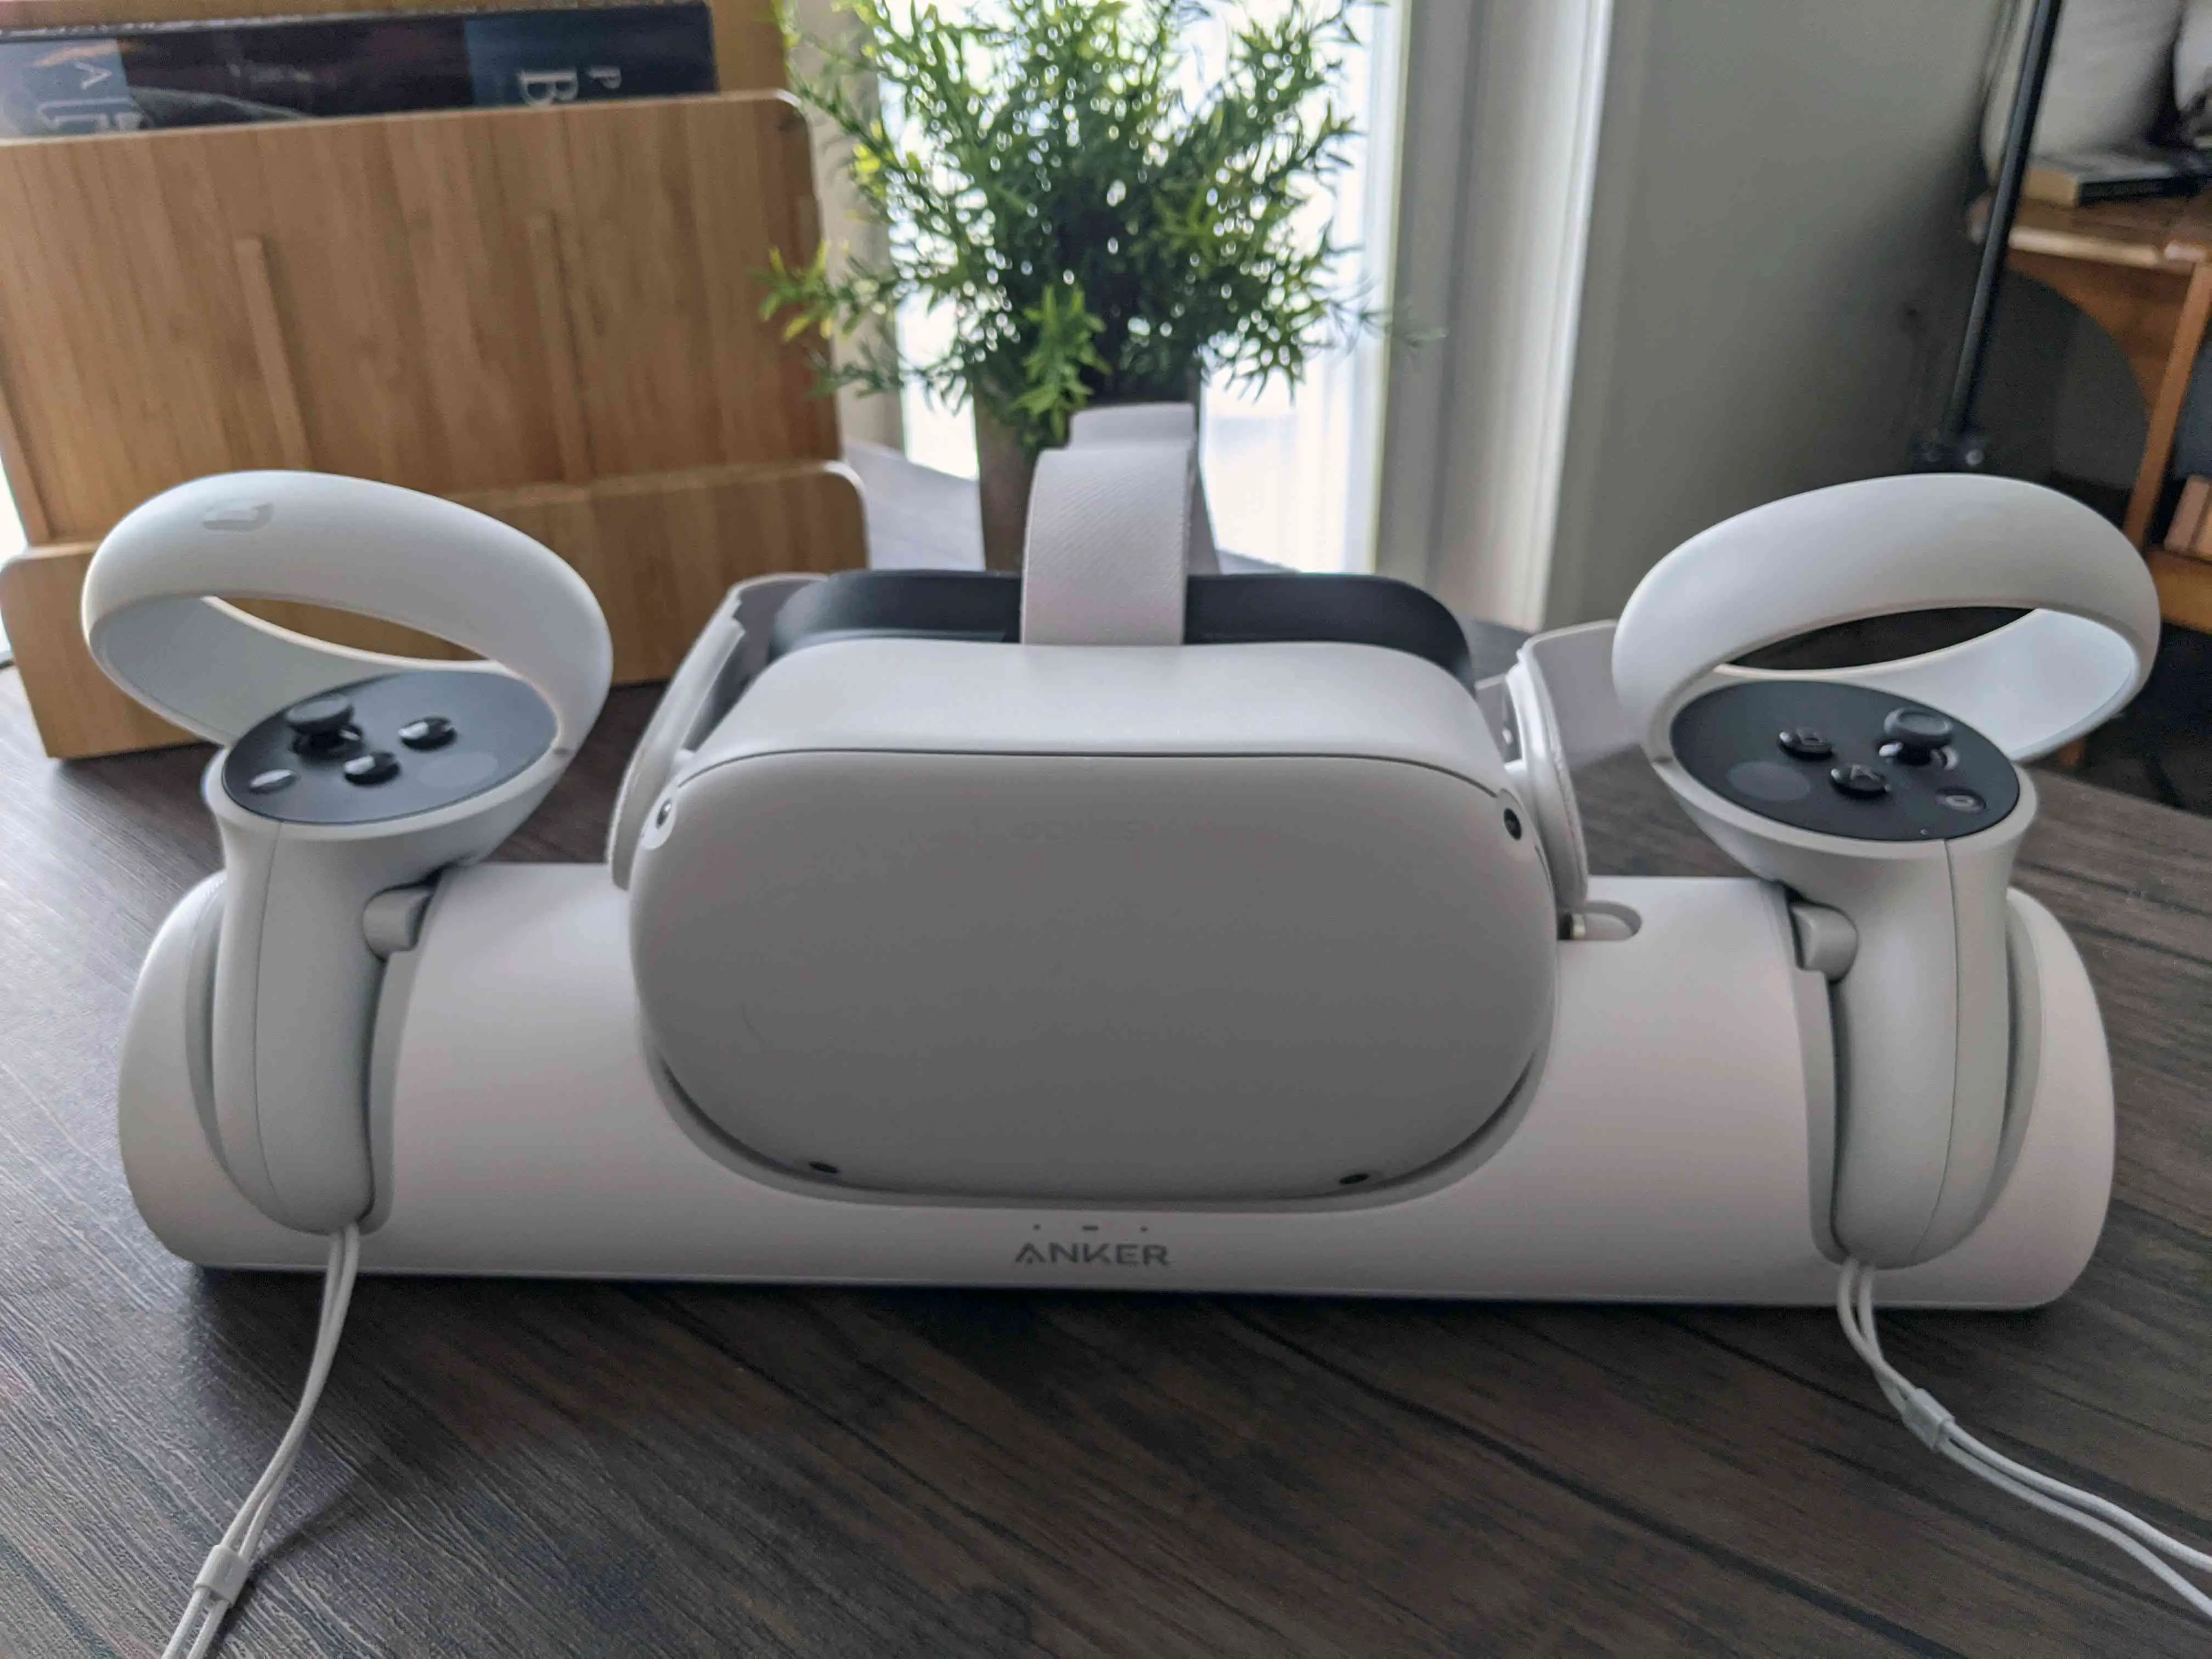 Controladores Oculus Quest 2 e carregamento de fone de ouvido na doca Anker.